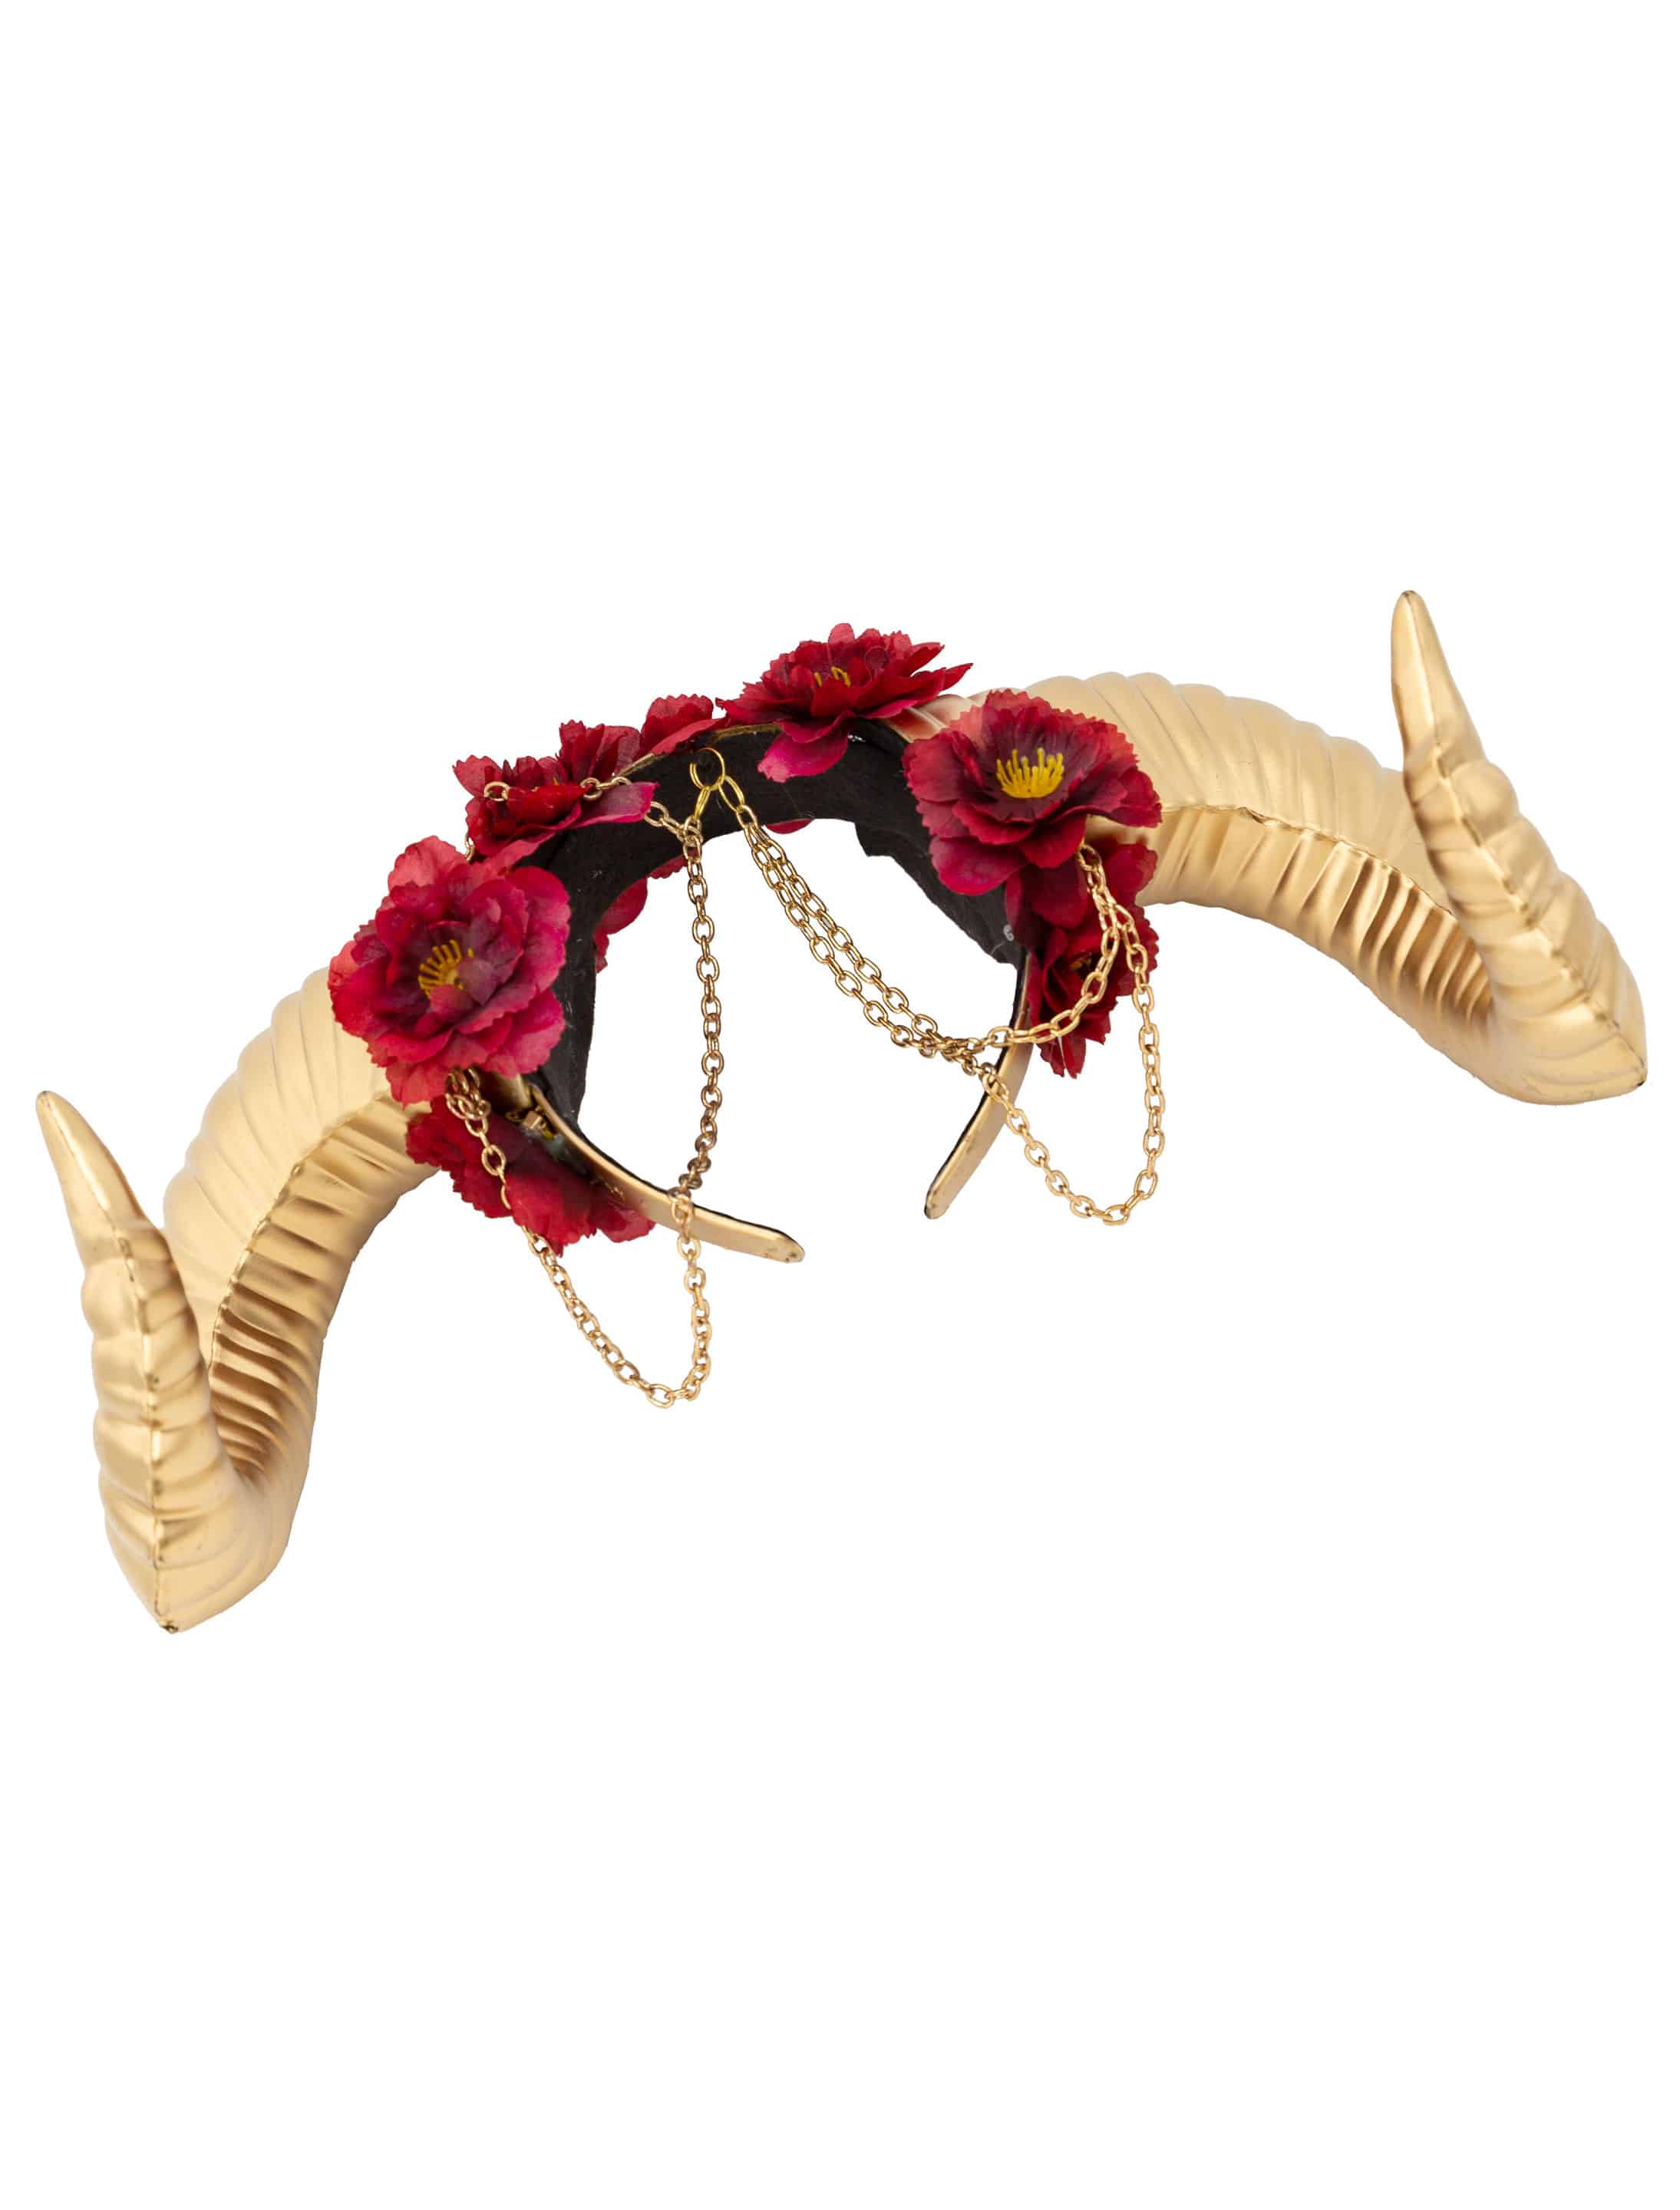 Haarreif Hörner und Ketten gold mit Blumen rot